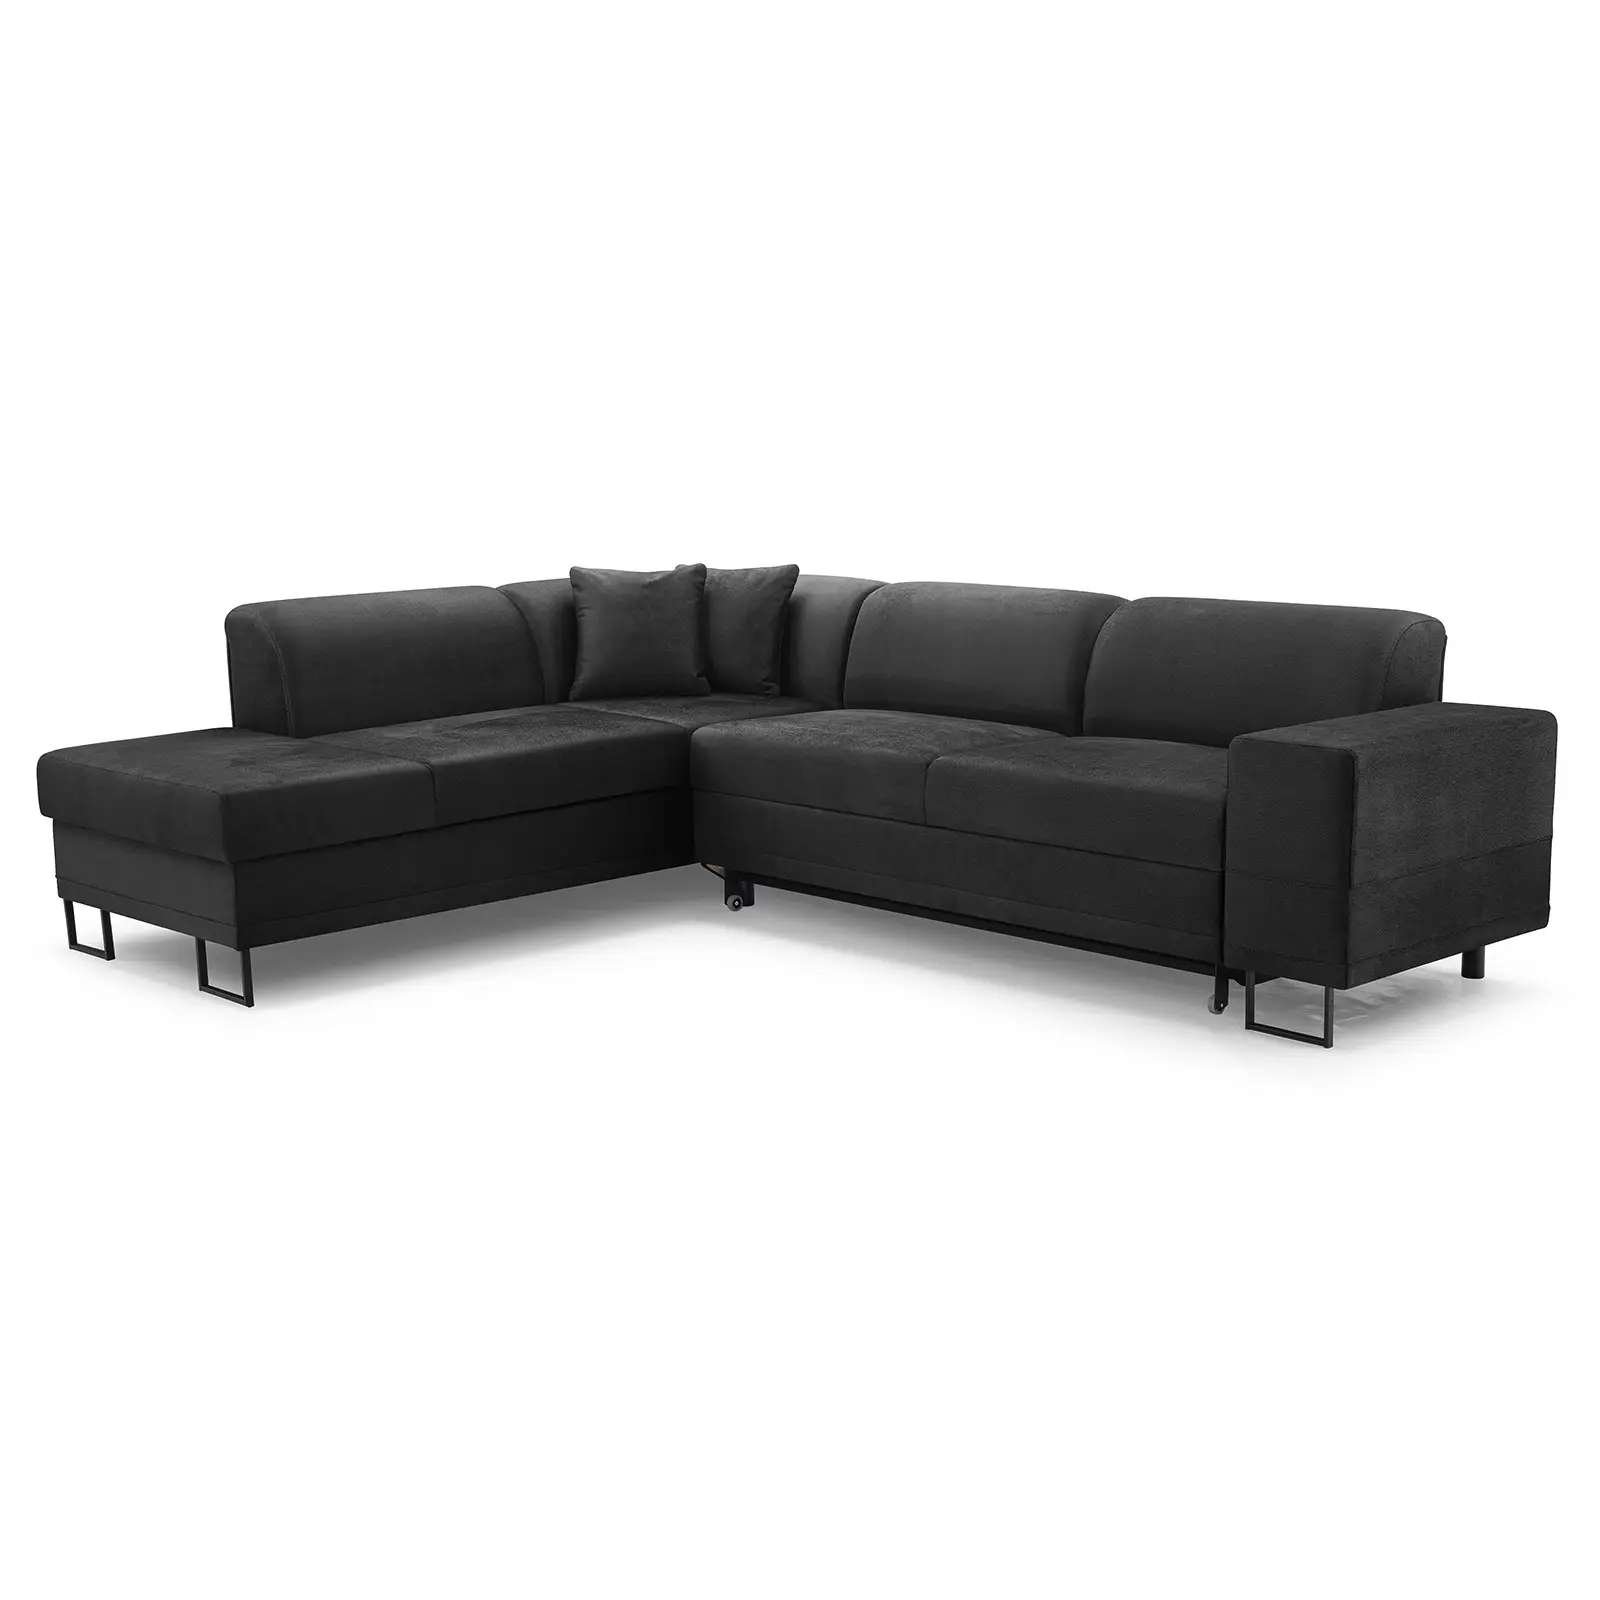 Ecksofa Eckcouch Kordoba L Form Couch